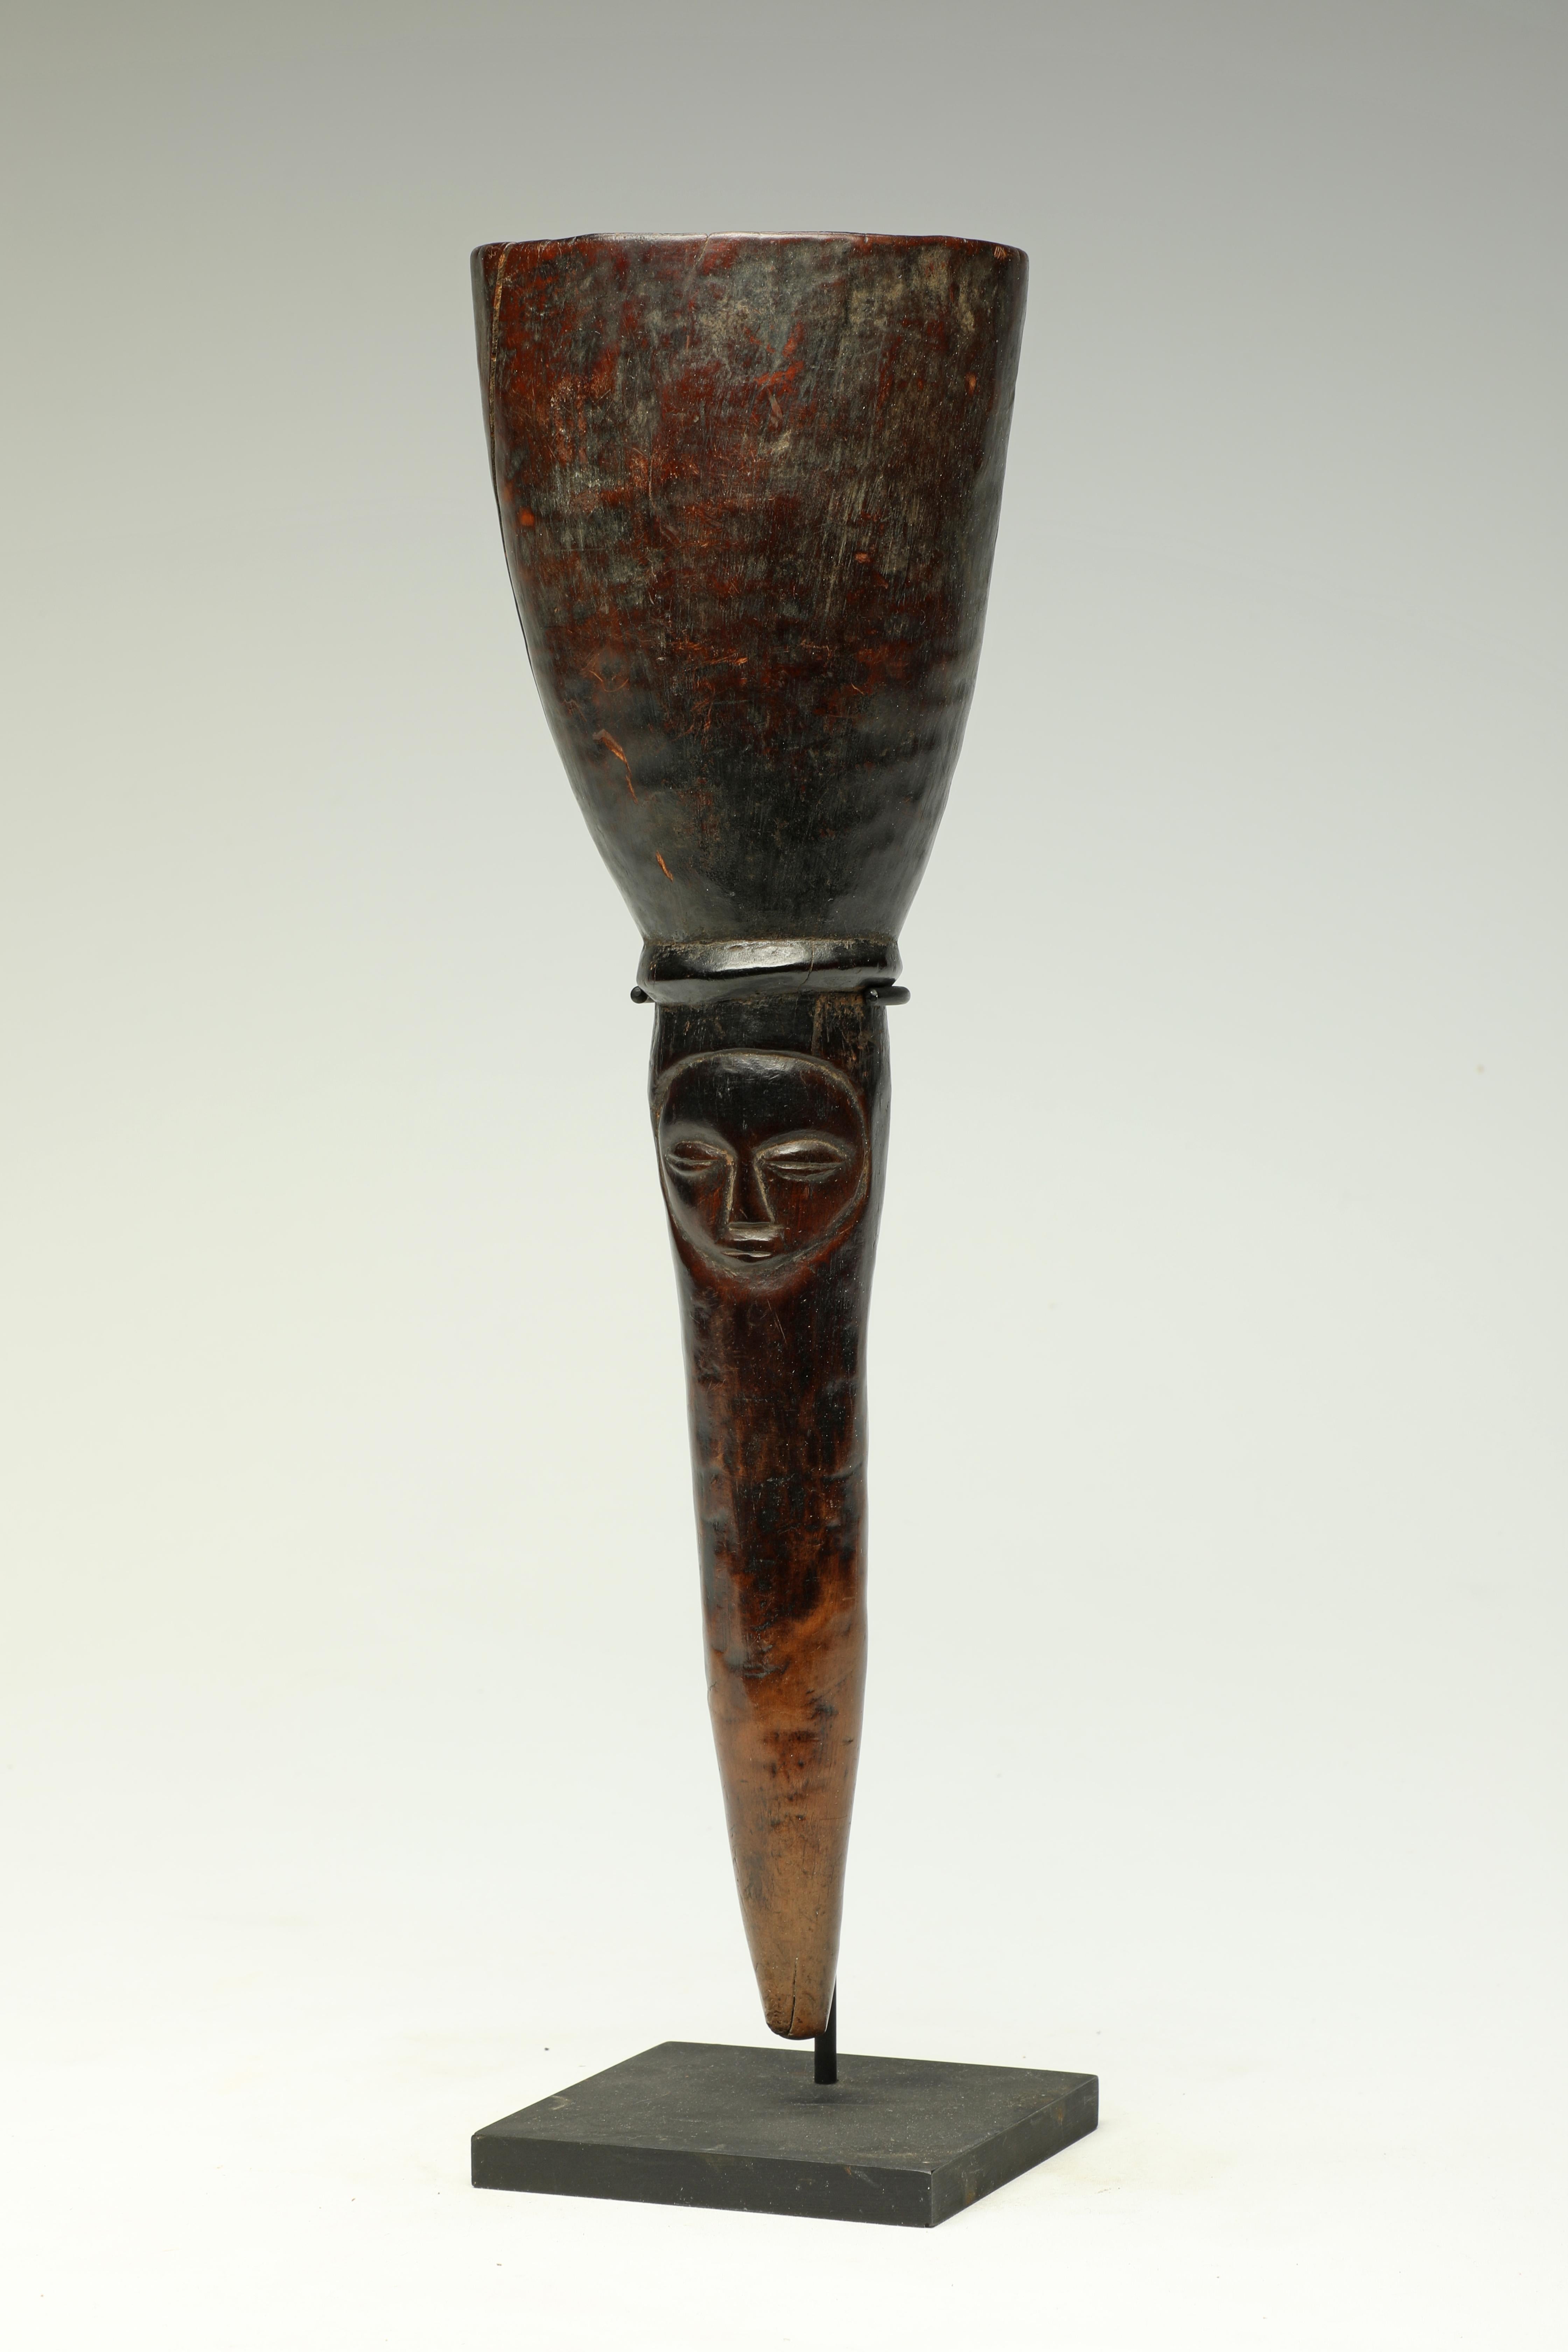 Mortier médicinal en bois de Luba, ancien et bien utilisé, avec un visage Luba classique, RDC, Afrique.
Le mortier est très usé et poli à l'extérieur en raison de nombreuses années d'utilisation, et l'intérieur présente une usure profonde. Anciennes